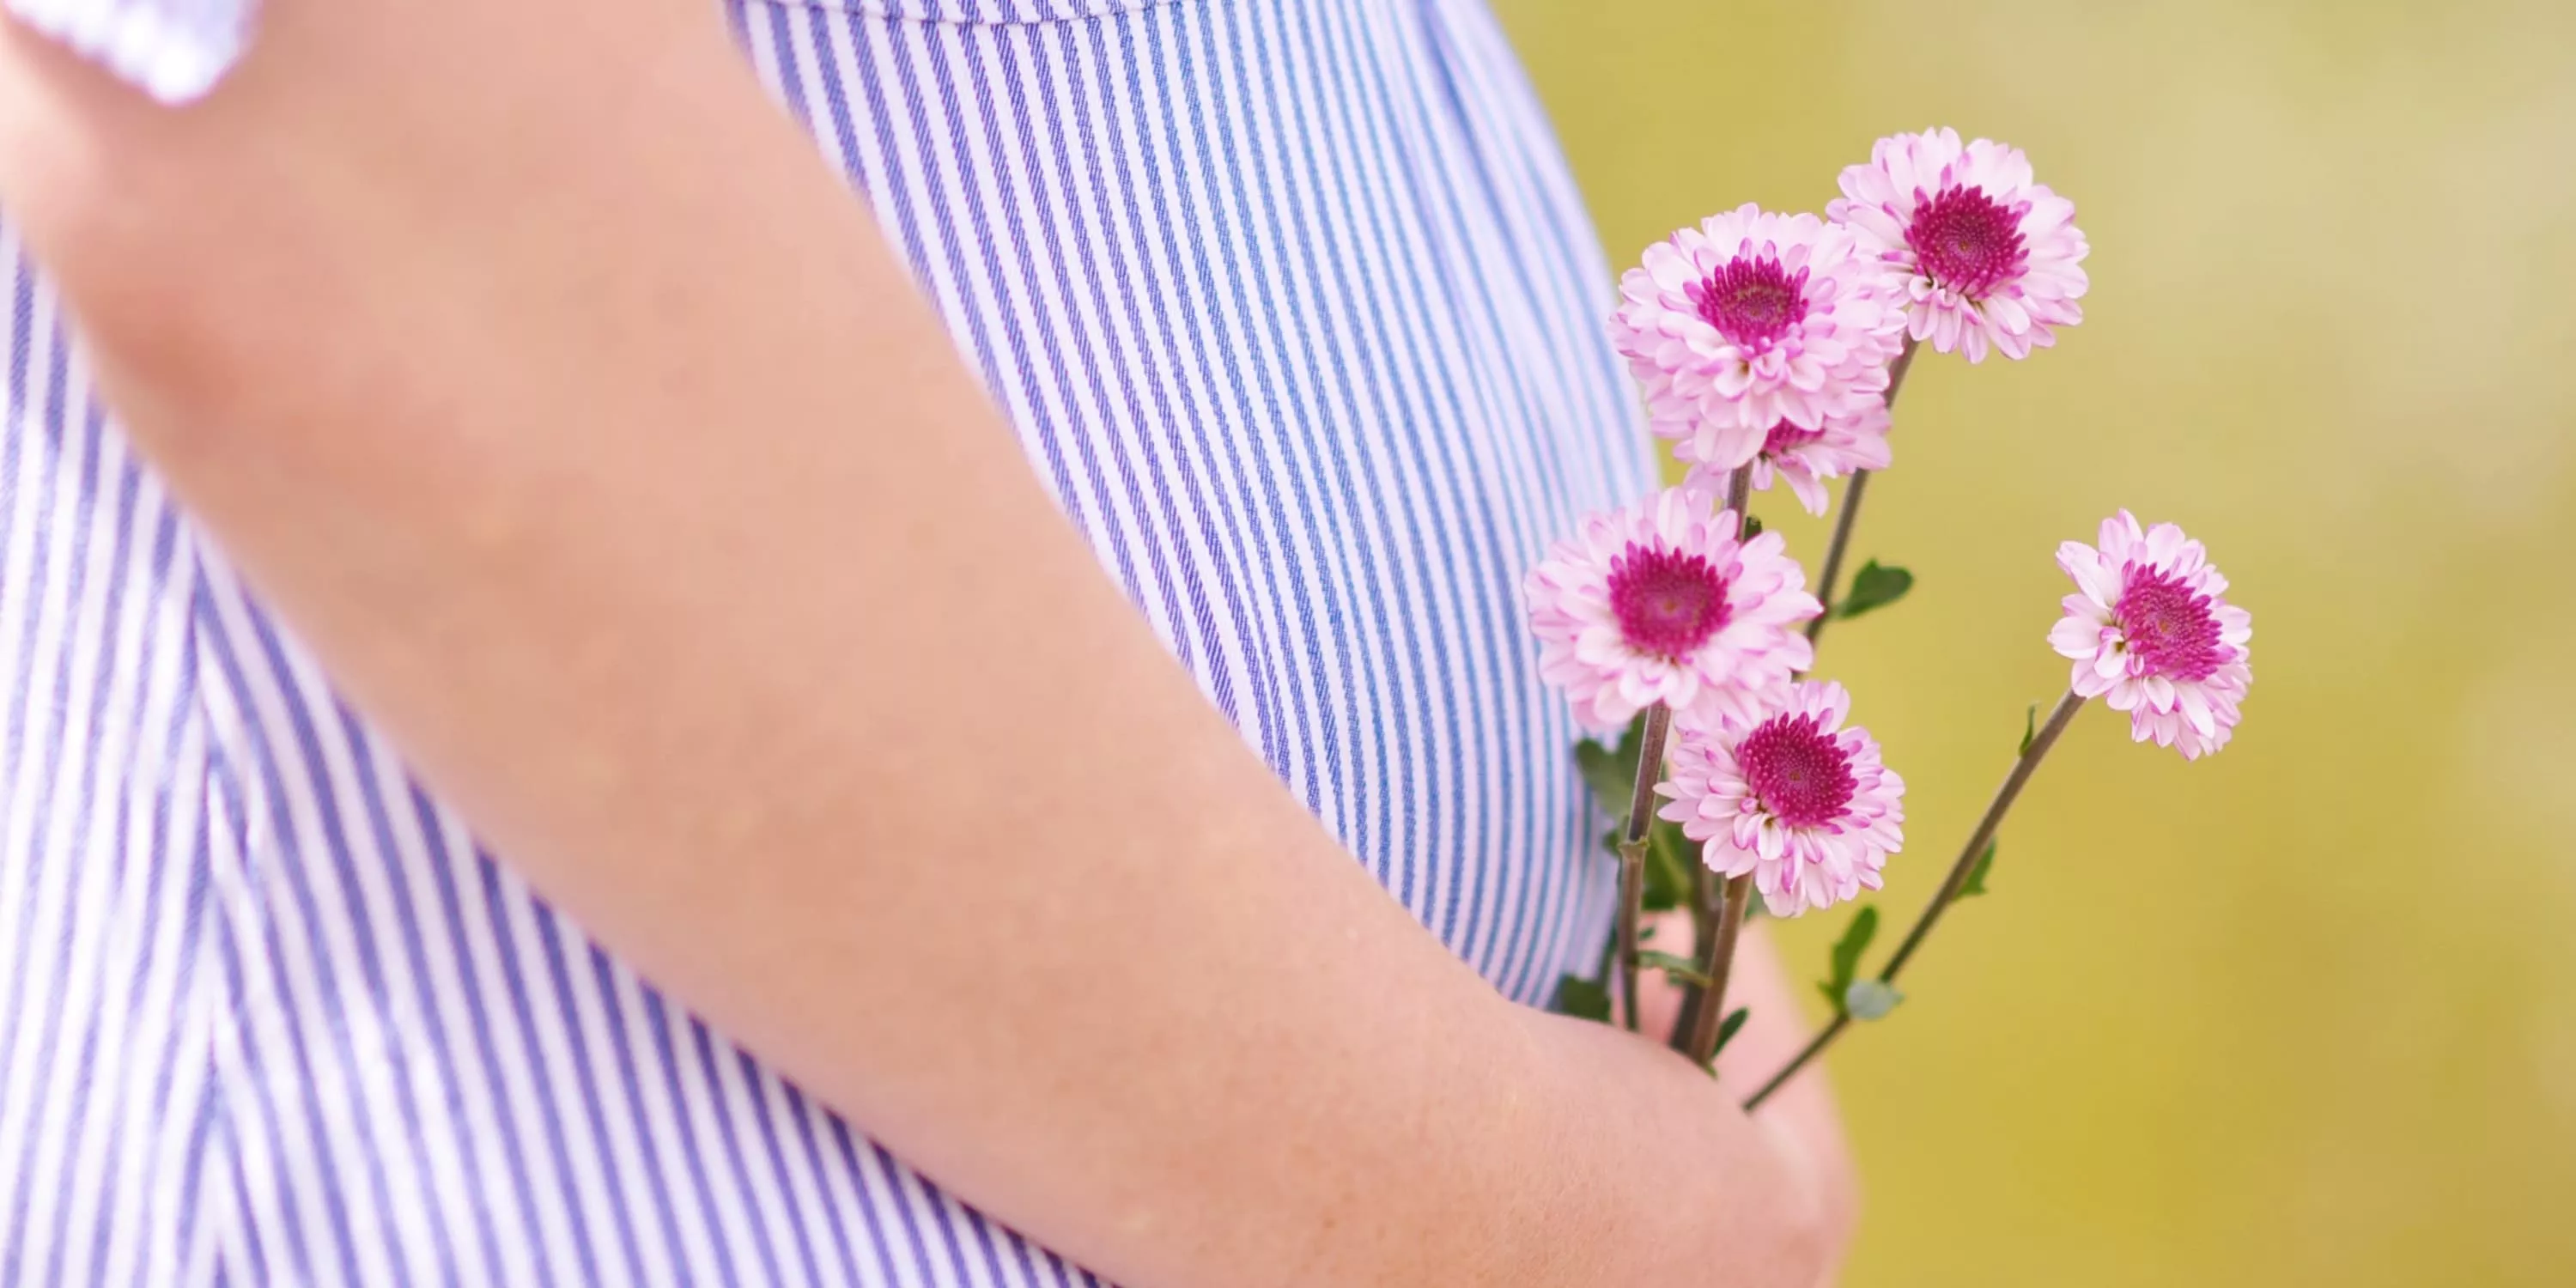 Udsnit af den gravide mave, kvinden holder nogle blomster